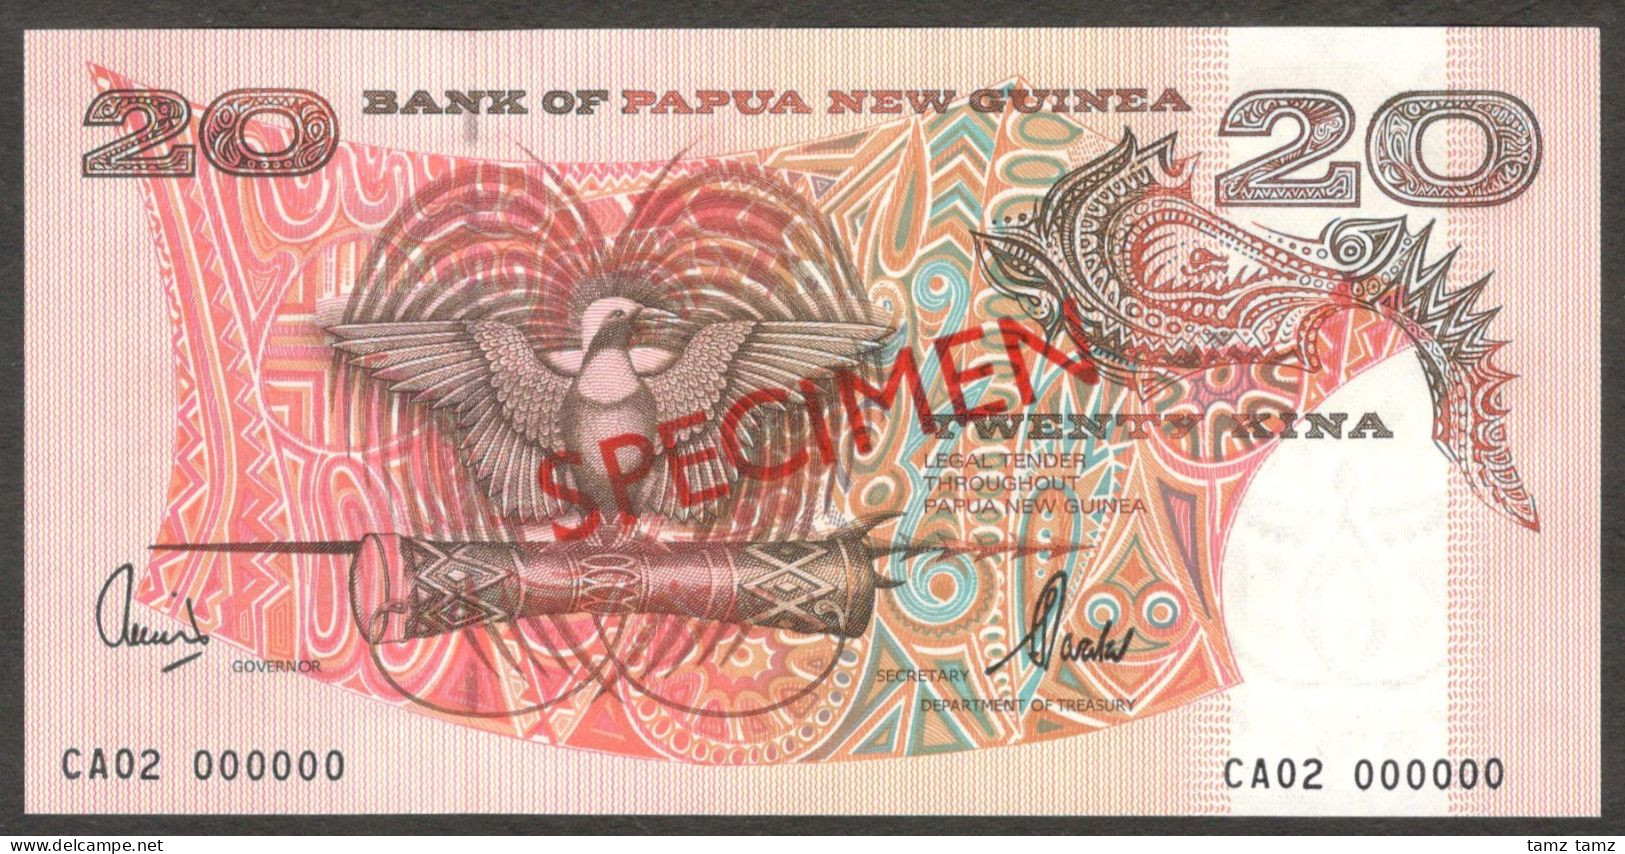 Papua New Guinea 20 Kina P-10es 2002 Specimen CA02 000000 UNC - Papua-Neuguinea